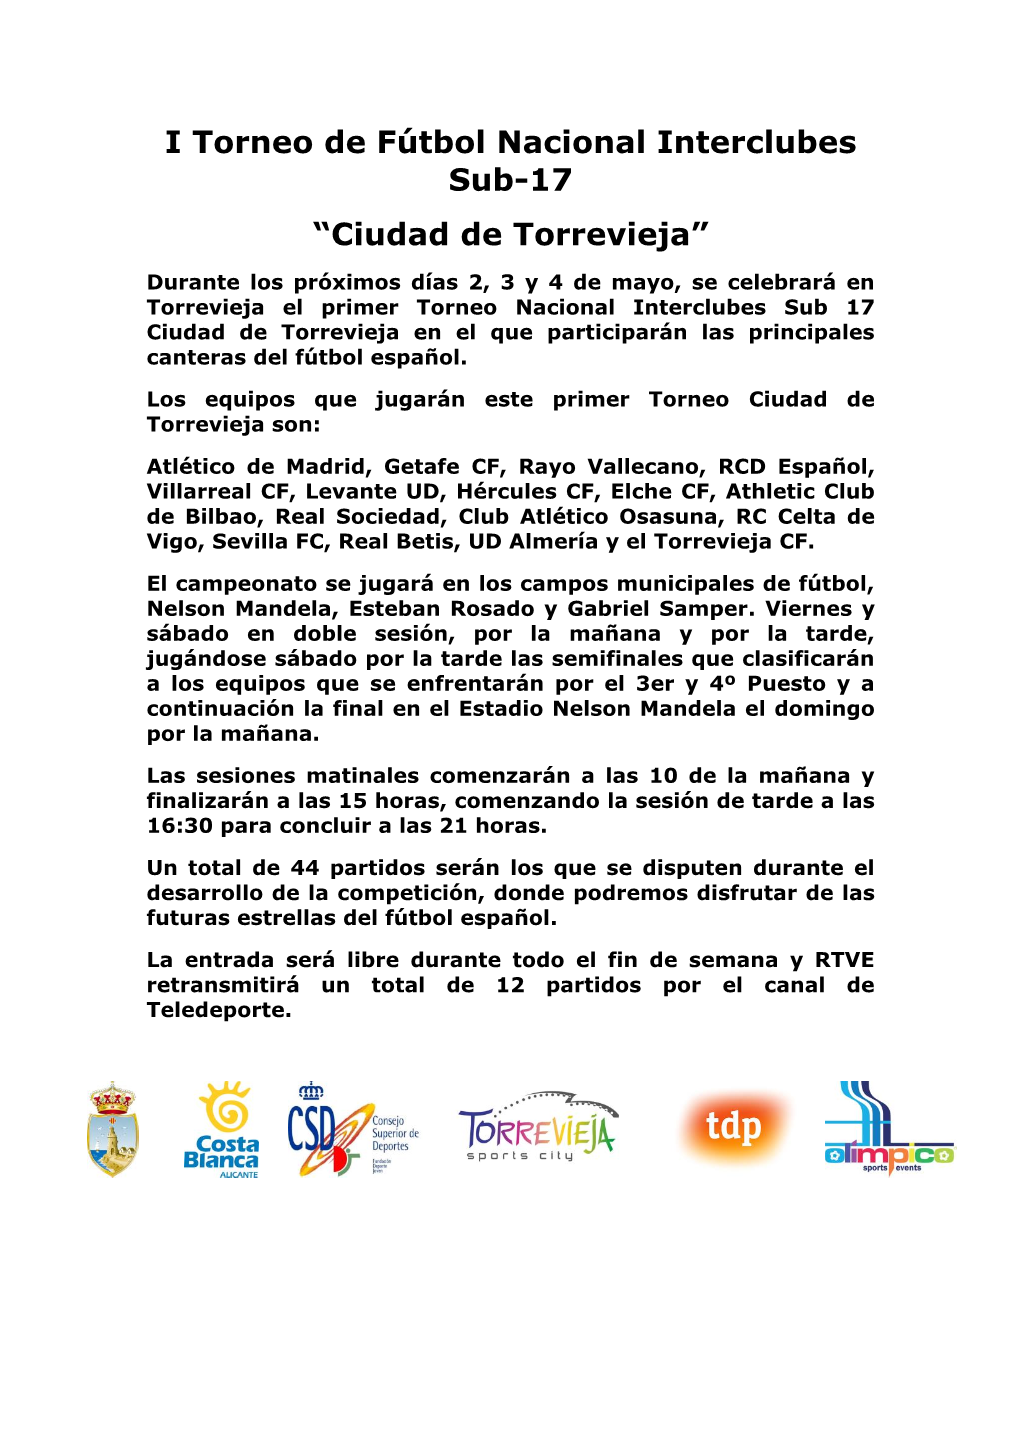 I Torneo De Fútbol Nacional Interclubes Sub-17 “Ciudad De Torrevieja”